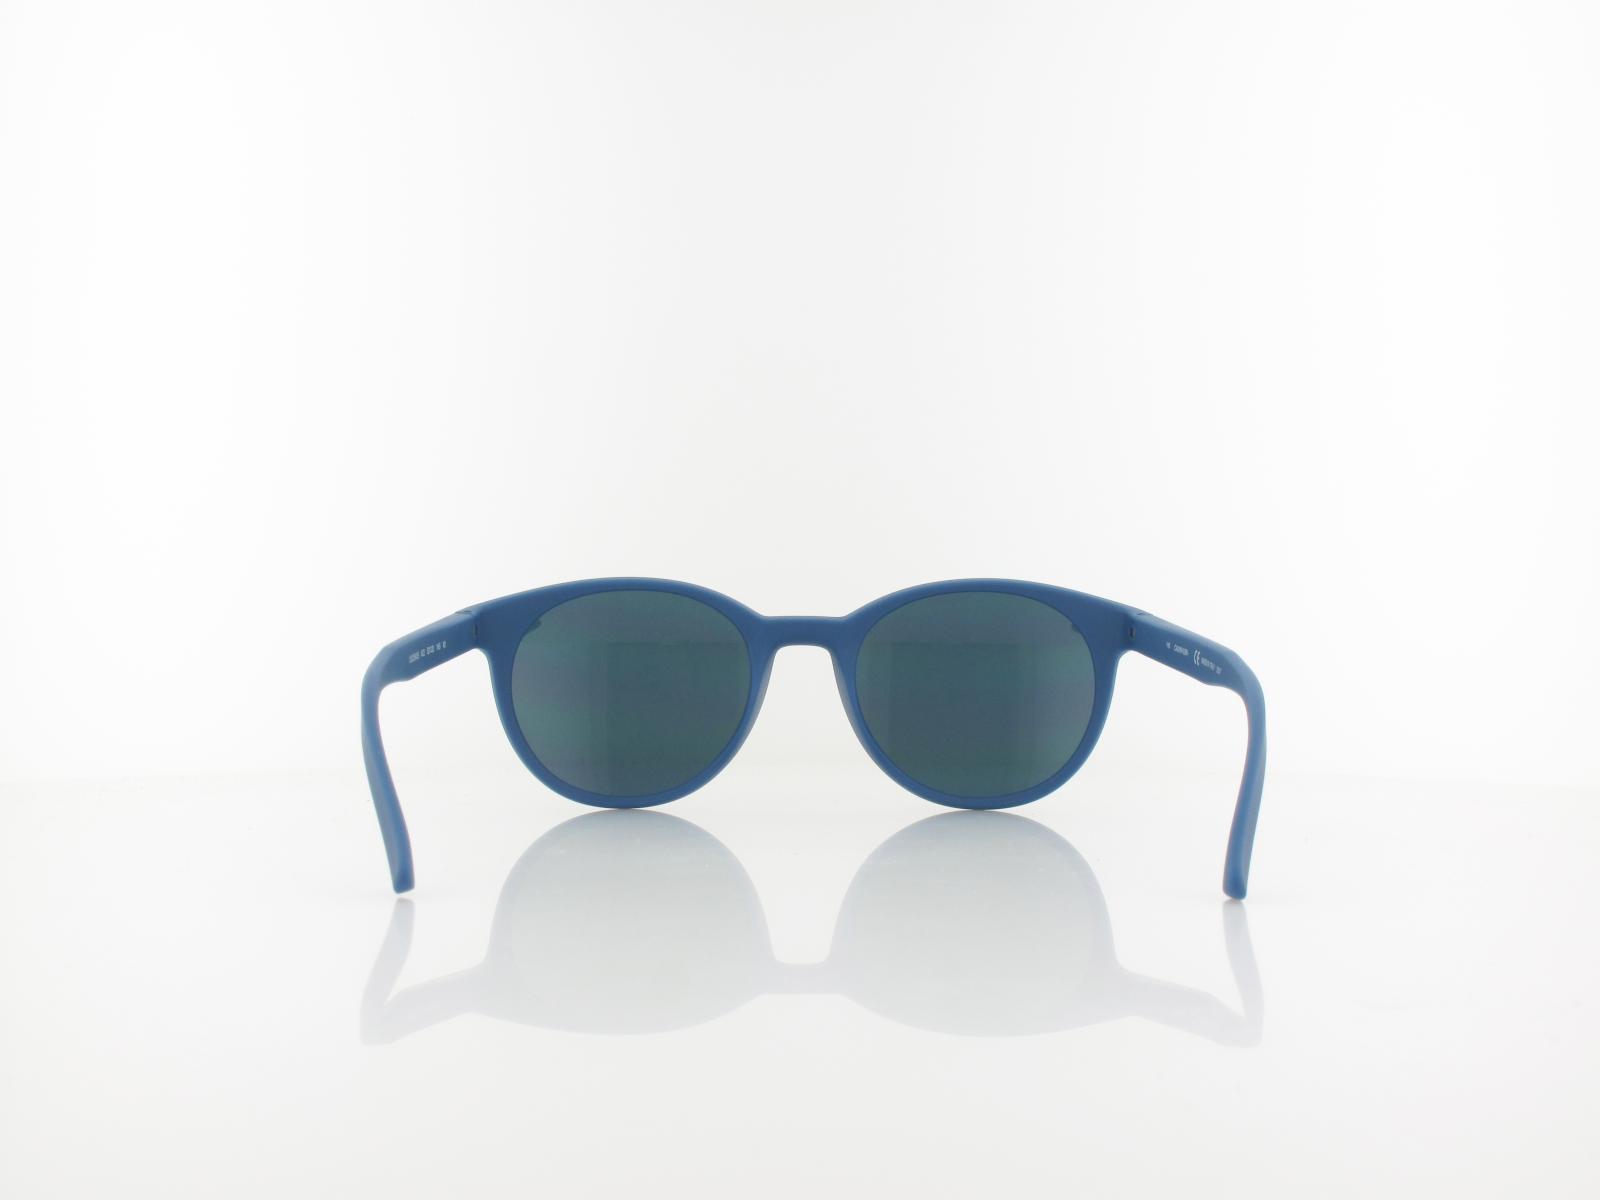 Calvin Klein | CK20543S 422 52 | matte slate blue / blue